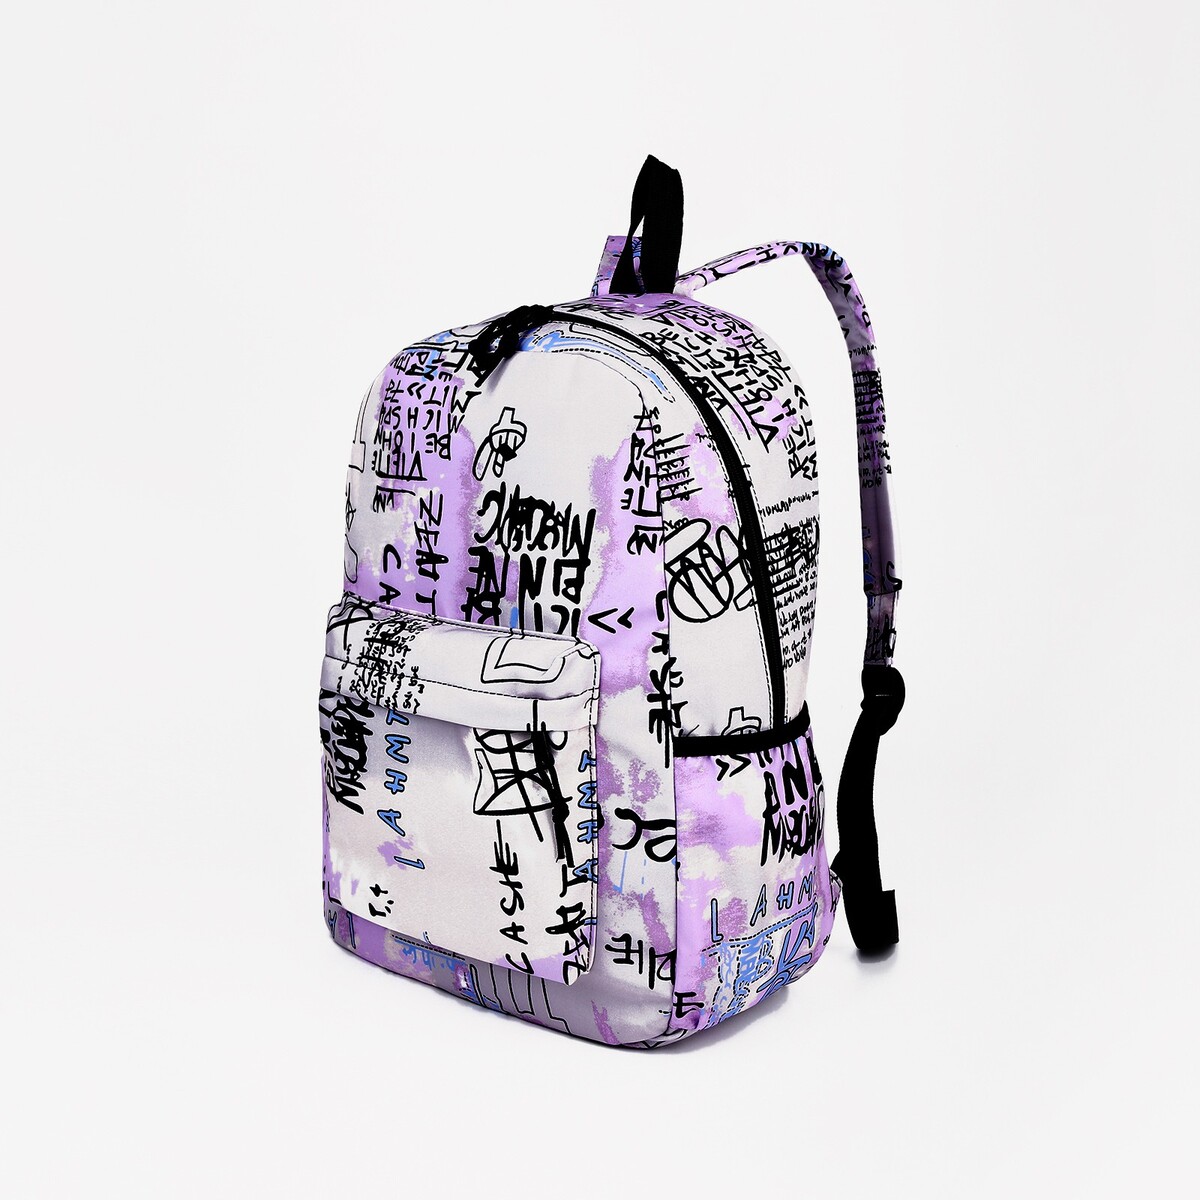 Рюкзак молодежный из текстиля на молнии, 3 кармана, цвет сиреневый рюкзак школьный из текстиля на молнии 4 кармана сиреневый